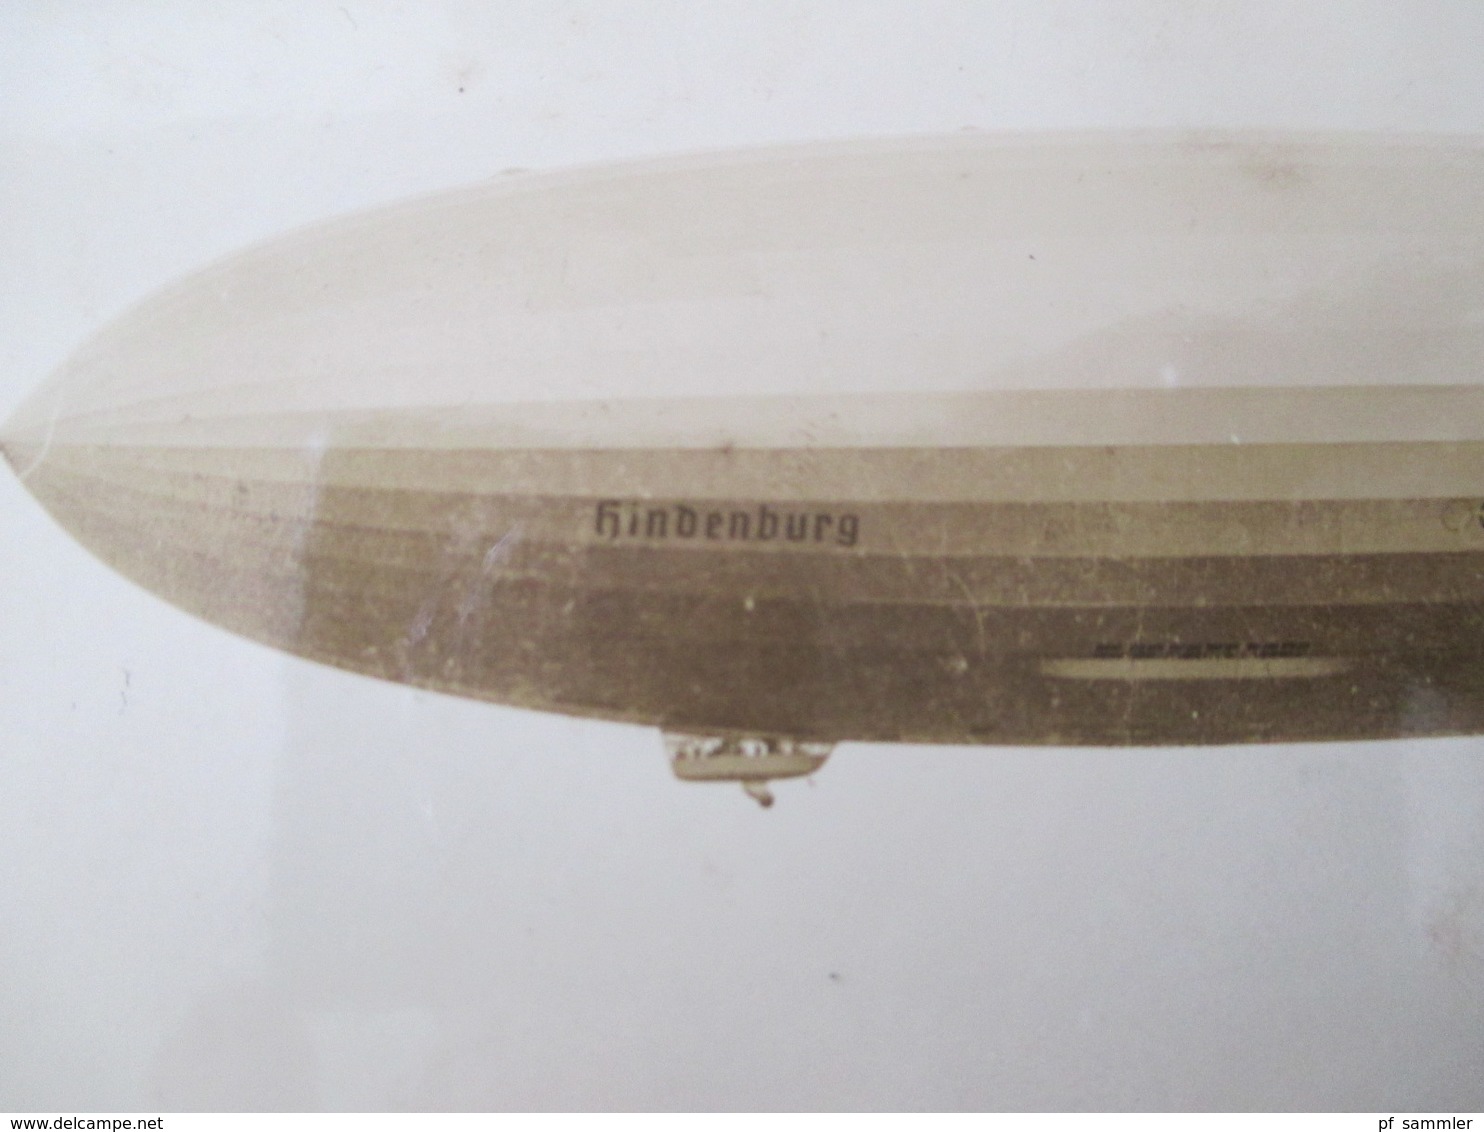 Echtfoto 1936 AK The Hindenburg D-LZ 129 N.A.S. Lakehurst N.J. Mit Stempel Flug Und Luftschiffhafen Rhein-Main Frankfurt - Dirigibili